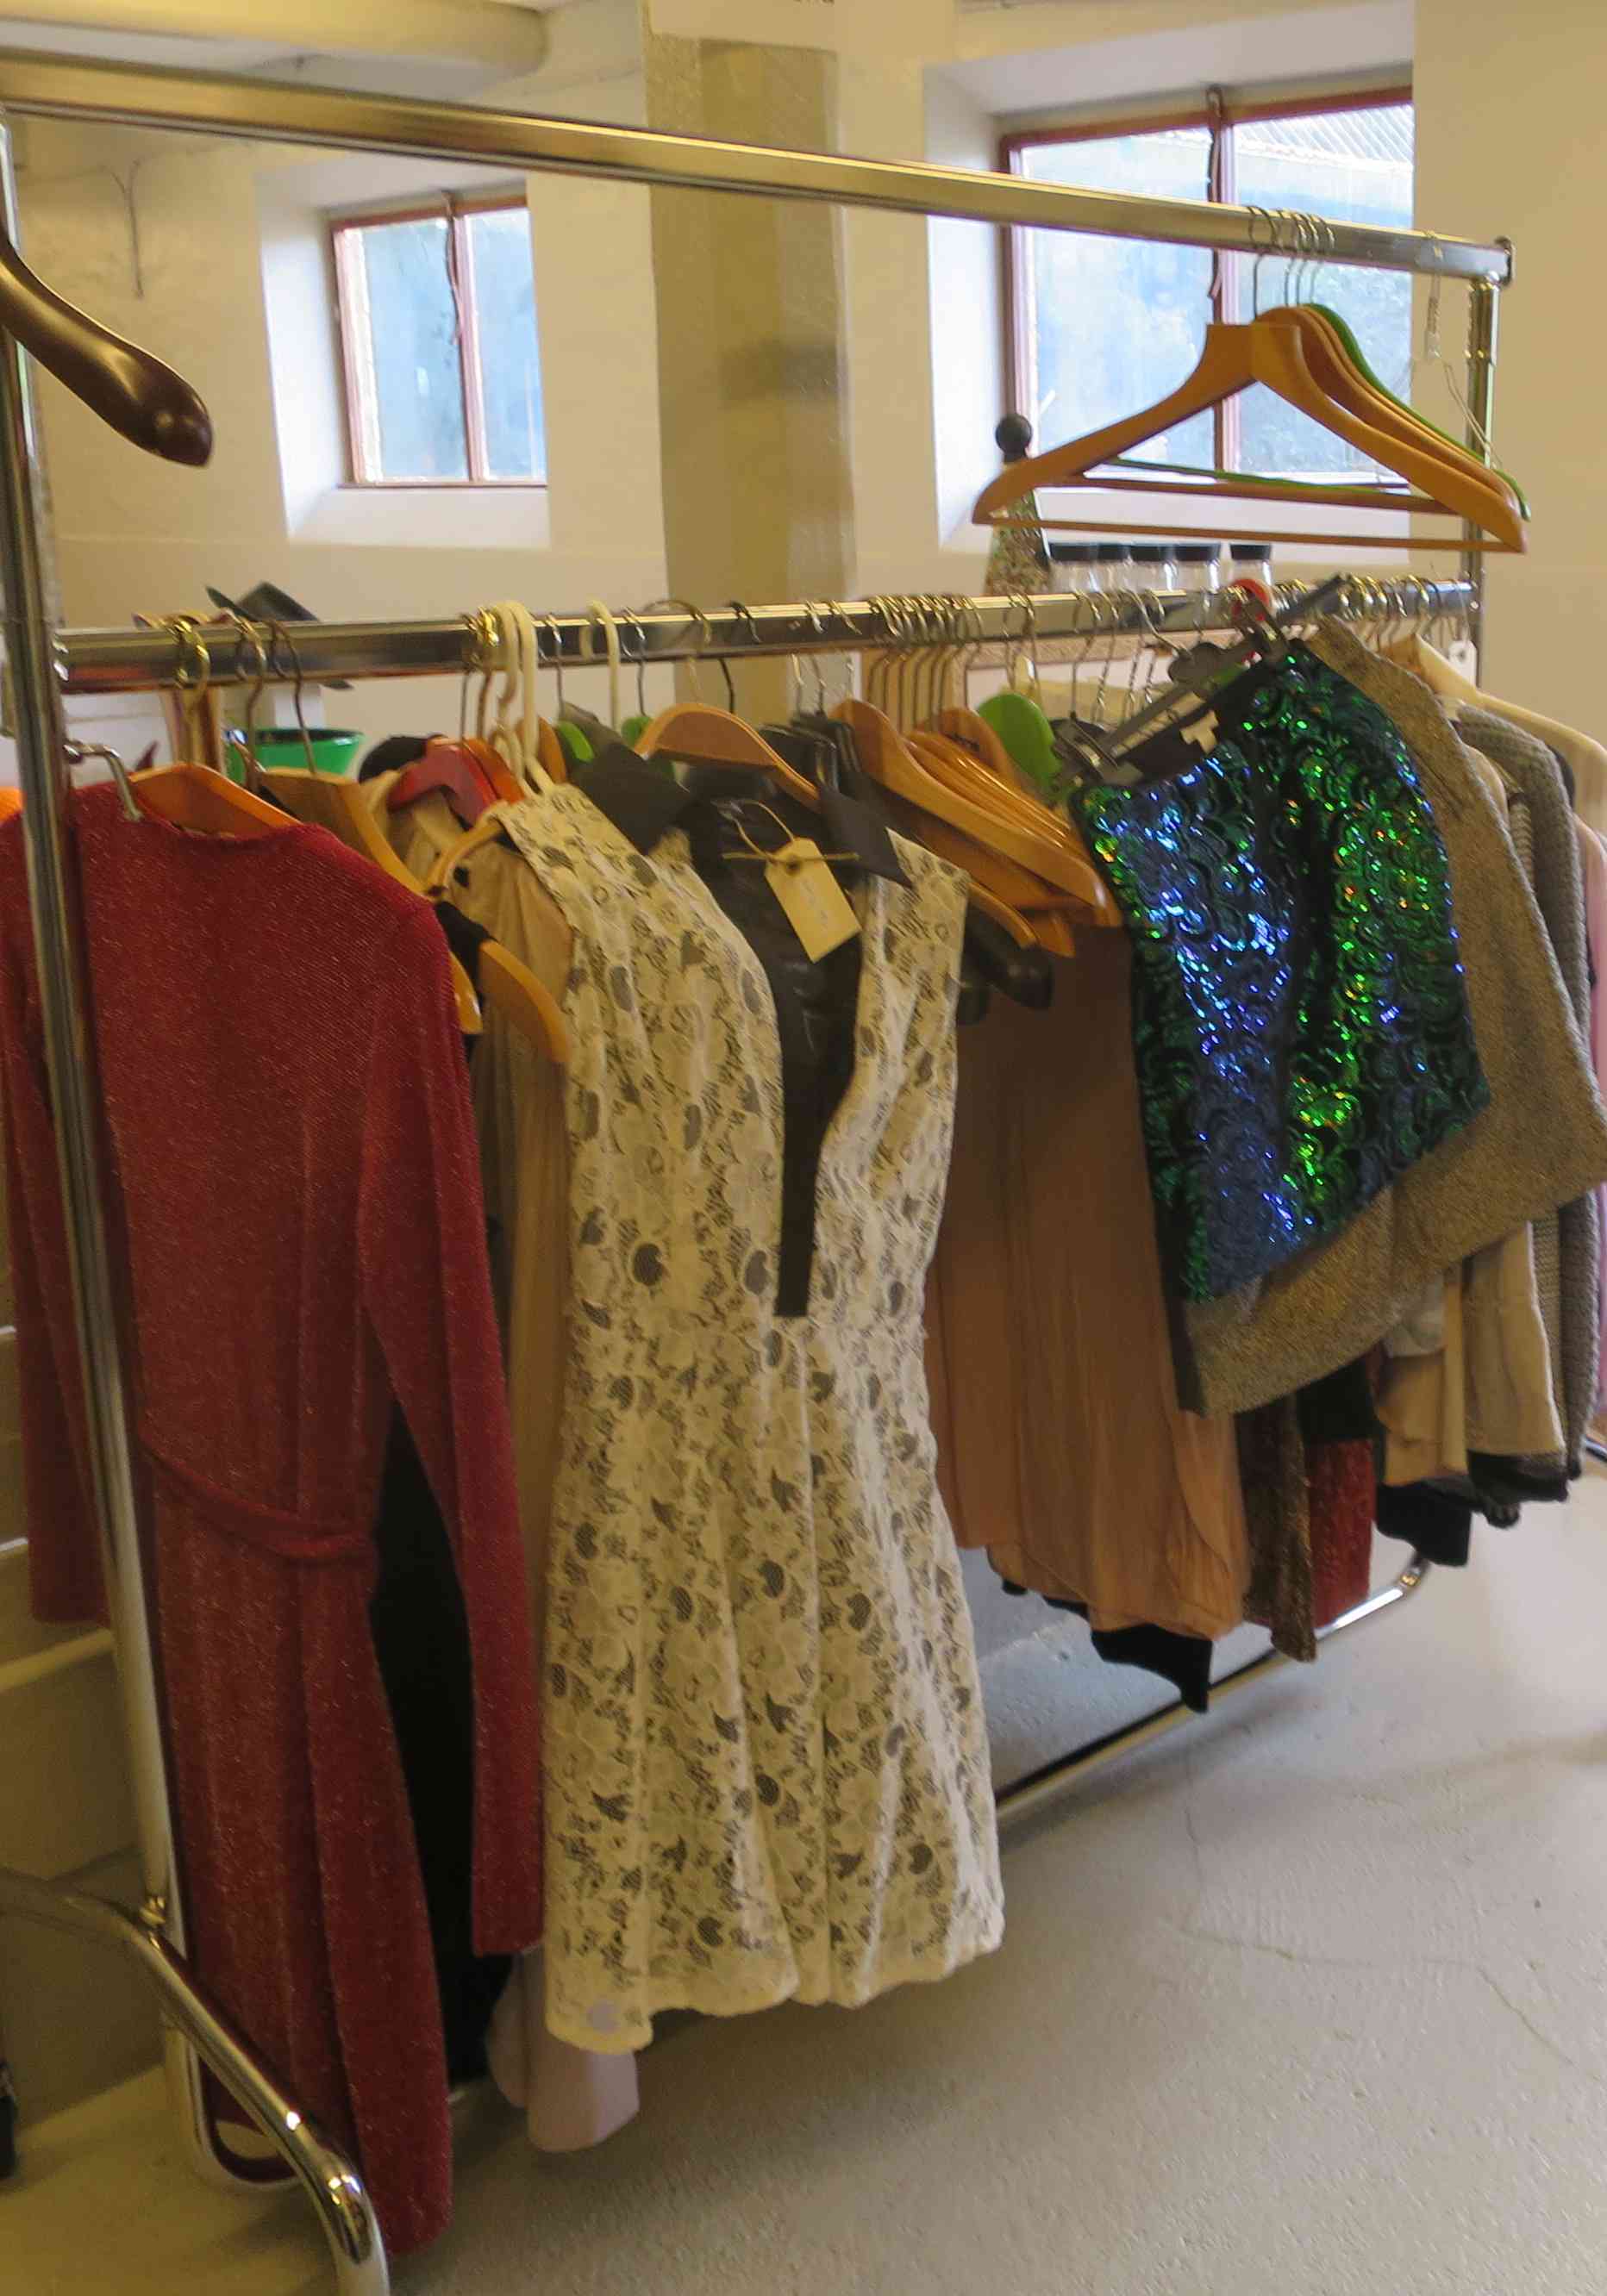 Brugt tøj til salg i gårdbutikken hos Vivis Pryd